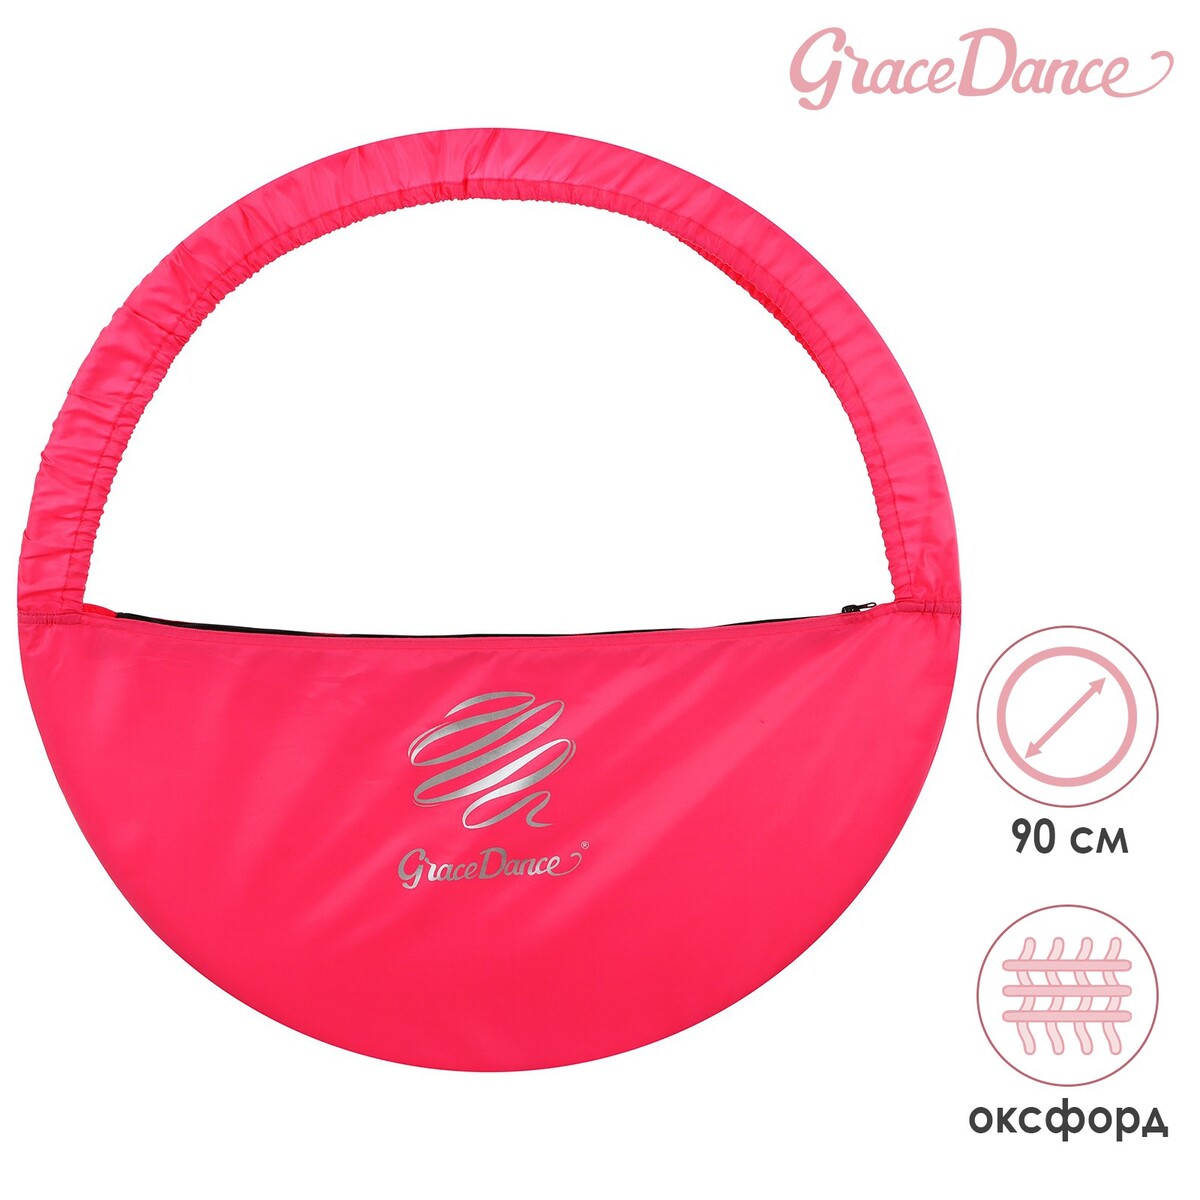 Чехол для обруча grace dance, d=90 см, цвет розовый чехол для обруча grace dance d 90 см розовый